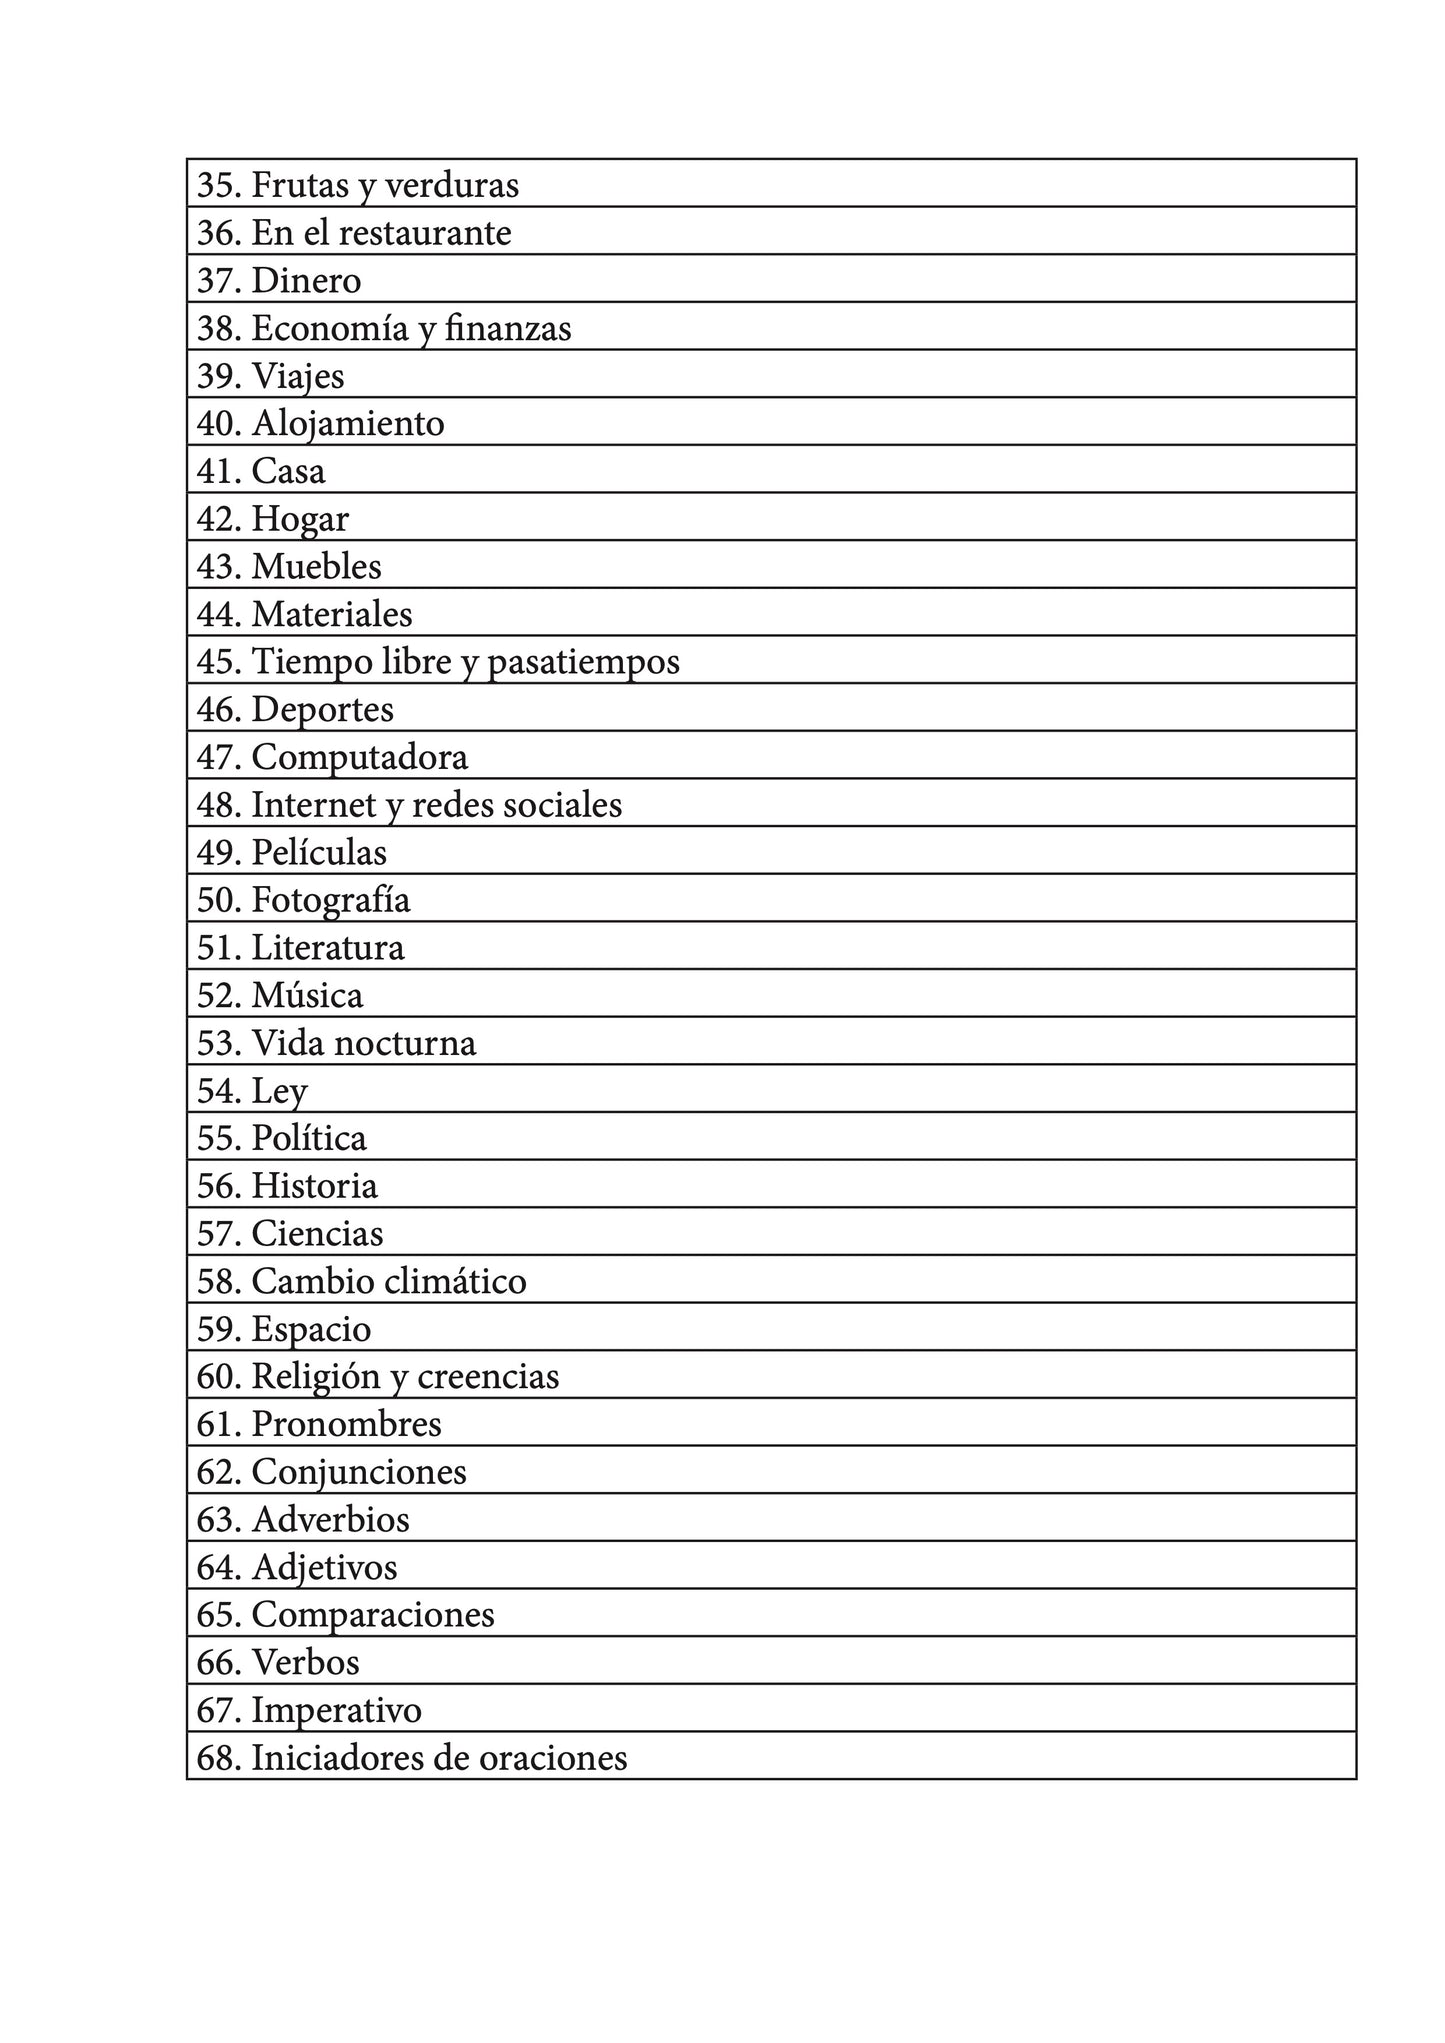 Español-otomi cuaderno de vocabulario